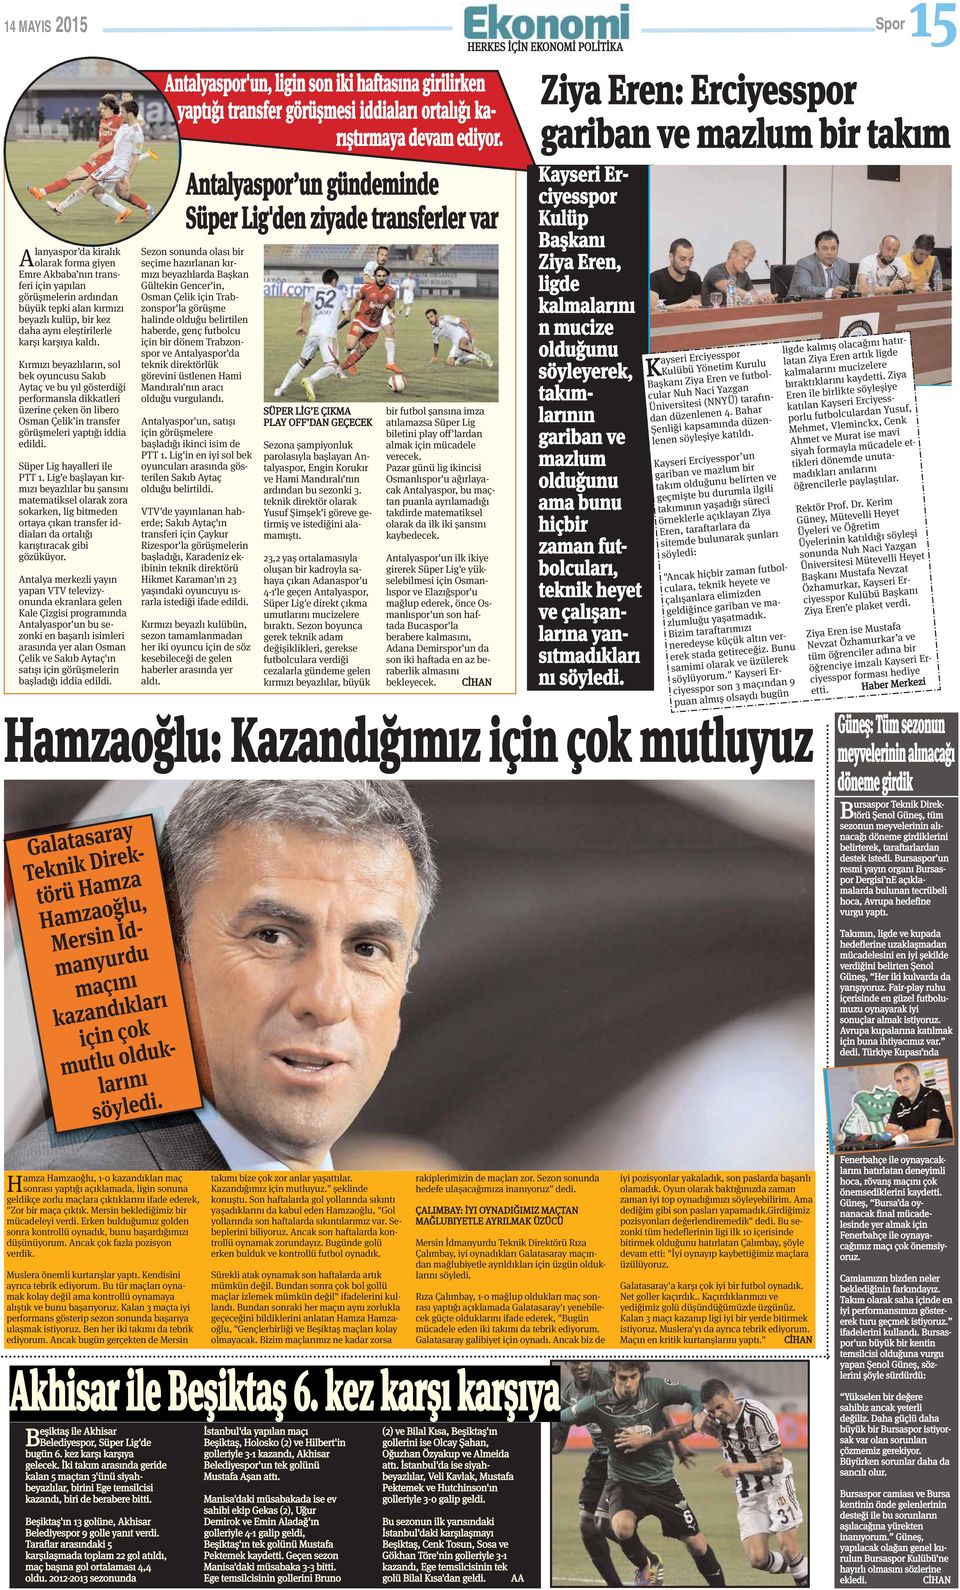 Kırmızı beyazlıların, sol bek oyuncusu Sakıb Aytaç ve bu yıl gösterdiği performansla dikkatleri üzerine çeken ön libero Osman Çelik in transfer görüşmeleri yaptığı iddia edildi.